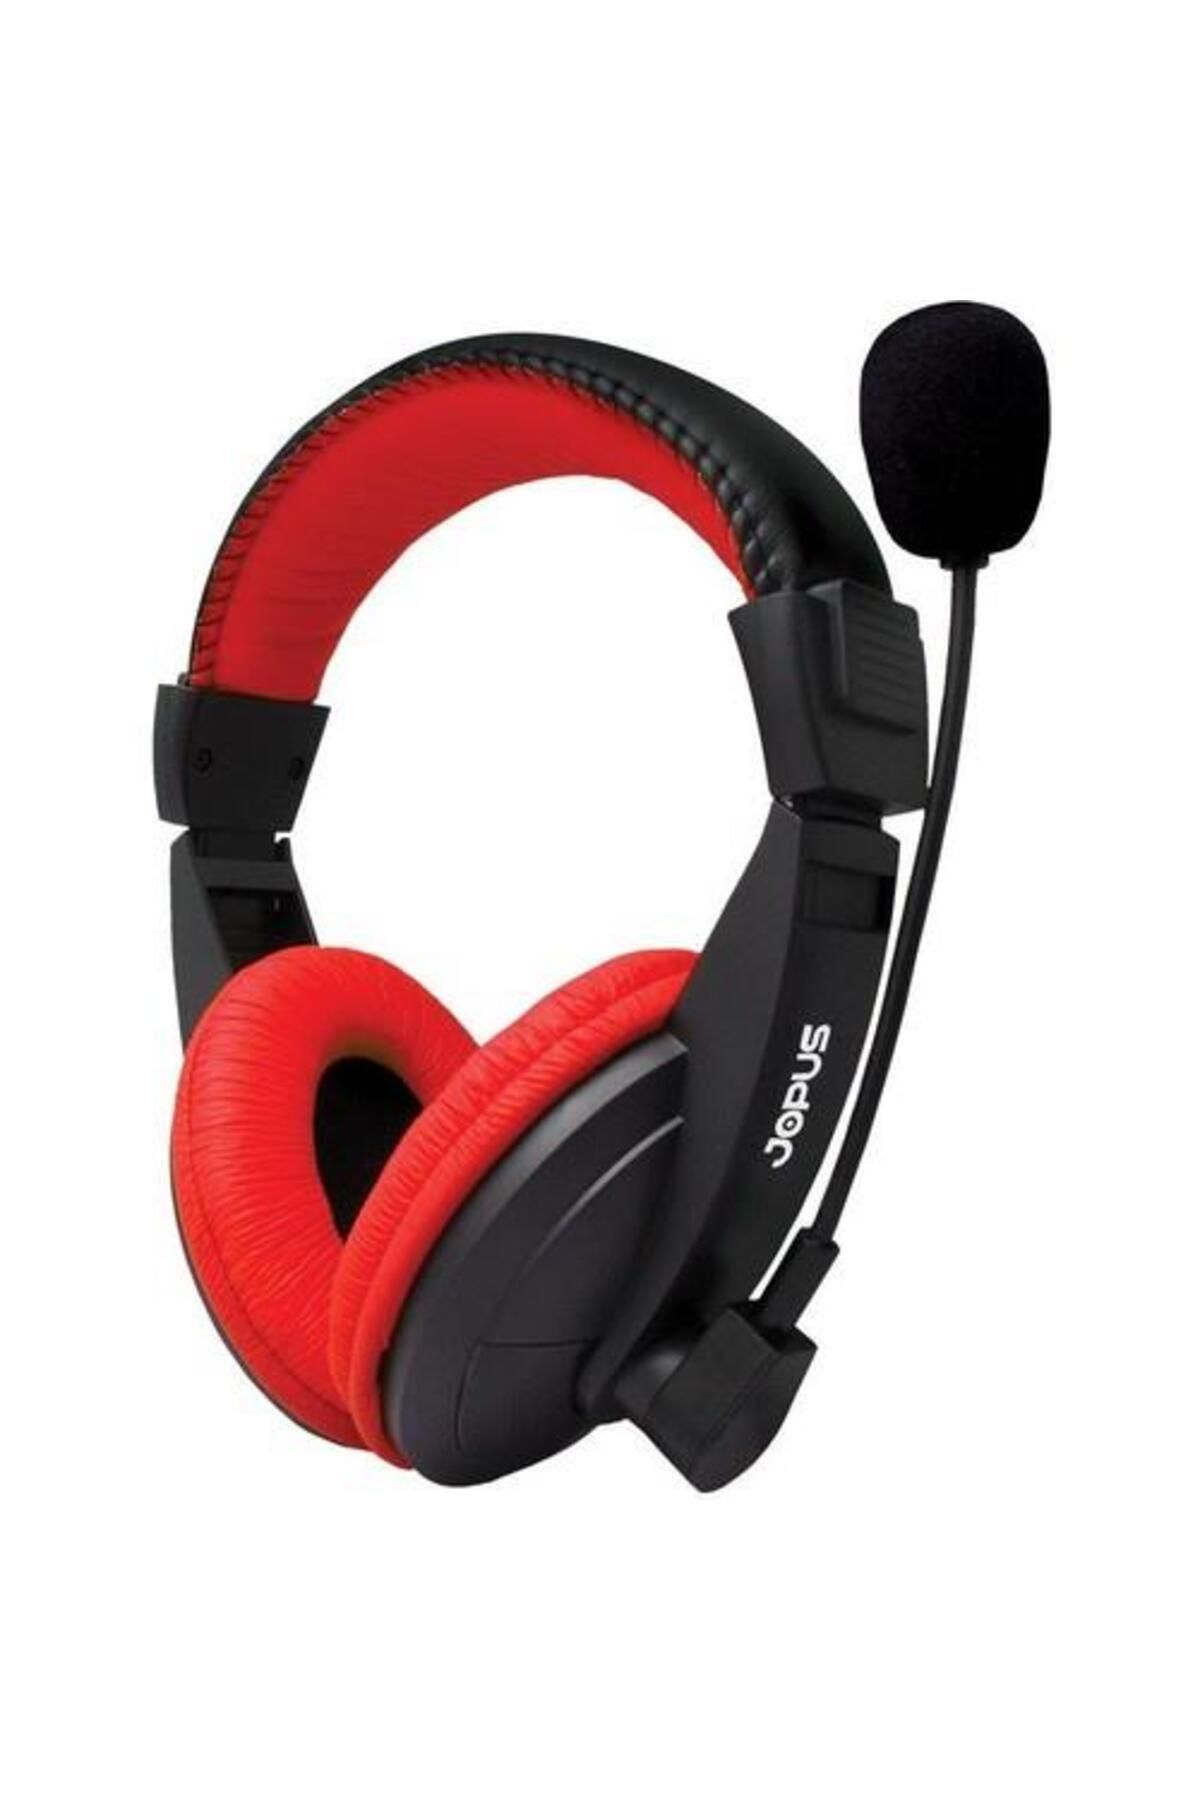 JOPUS TECHNOLOGY Jopus J1 Mikrofonlu Kulak Üstü Oyuncu Kulaklığı Oyuncu Kulaklığı Kırmızı